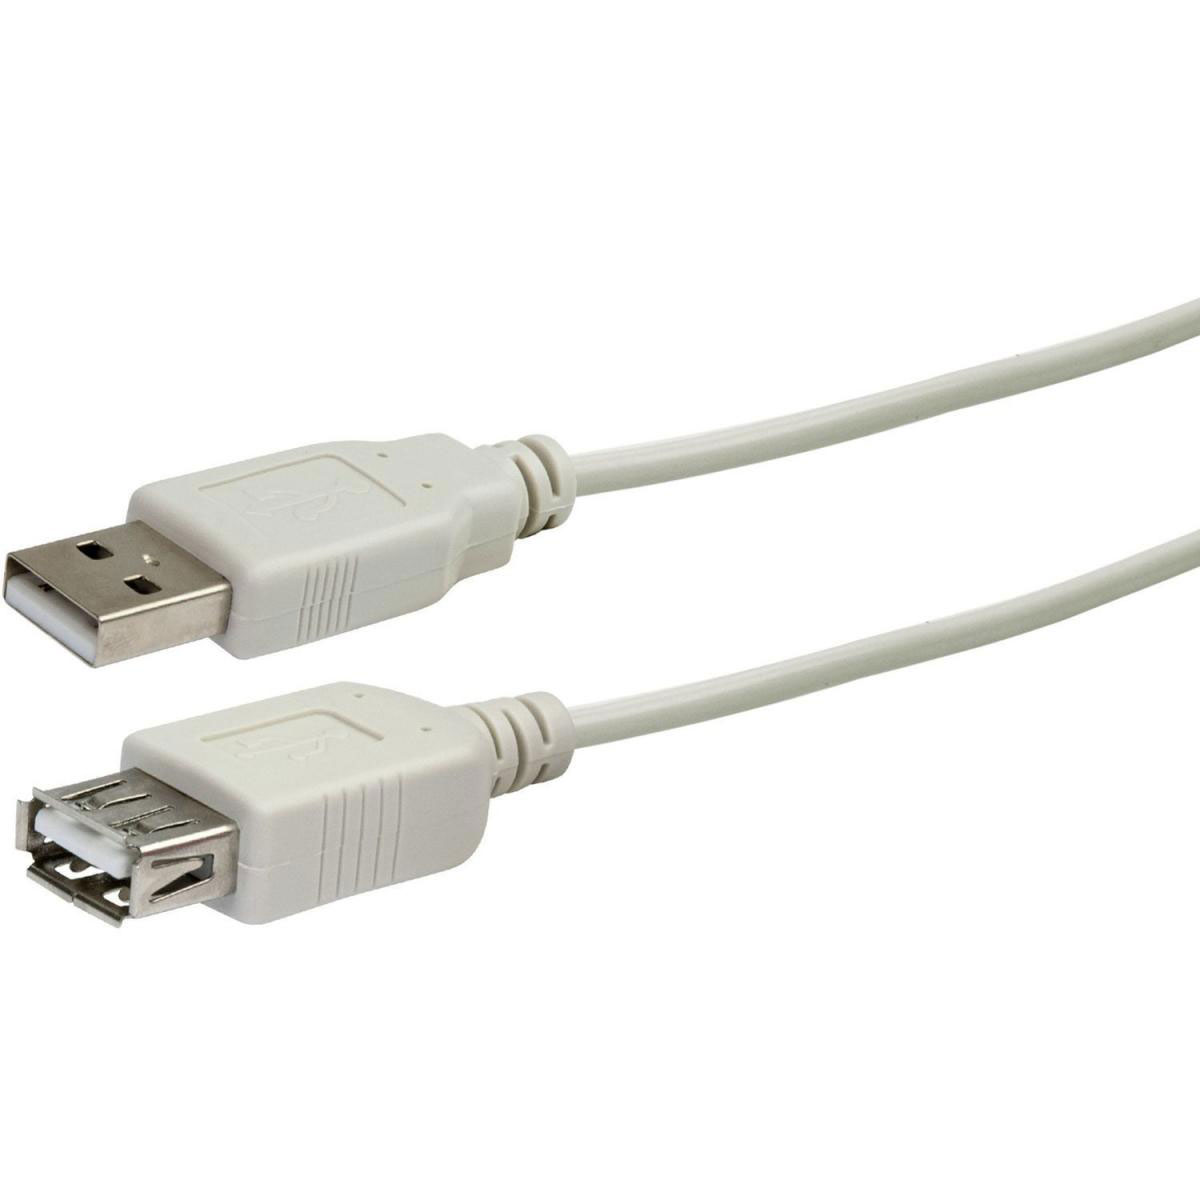 USB 2.0 Typ A Anschlusskabel, 2 m, weiß